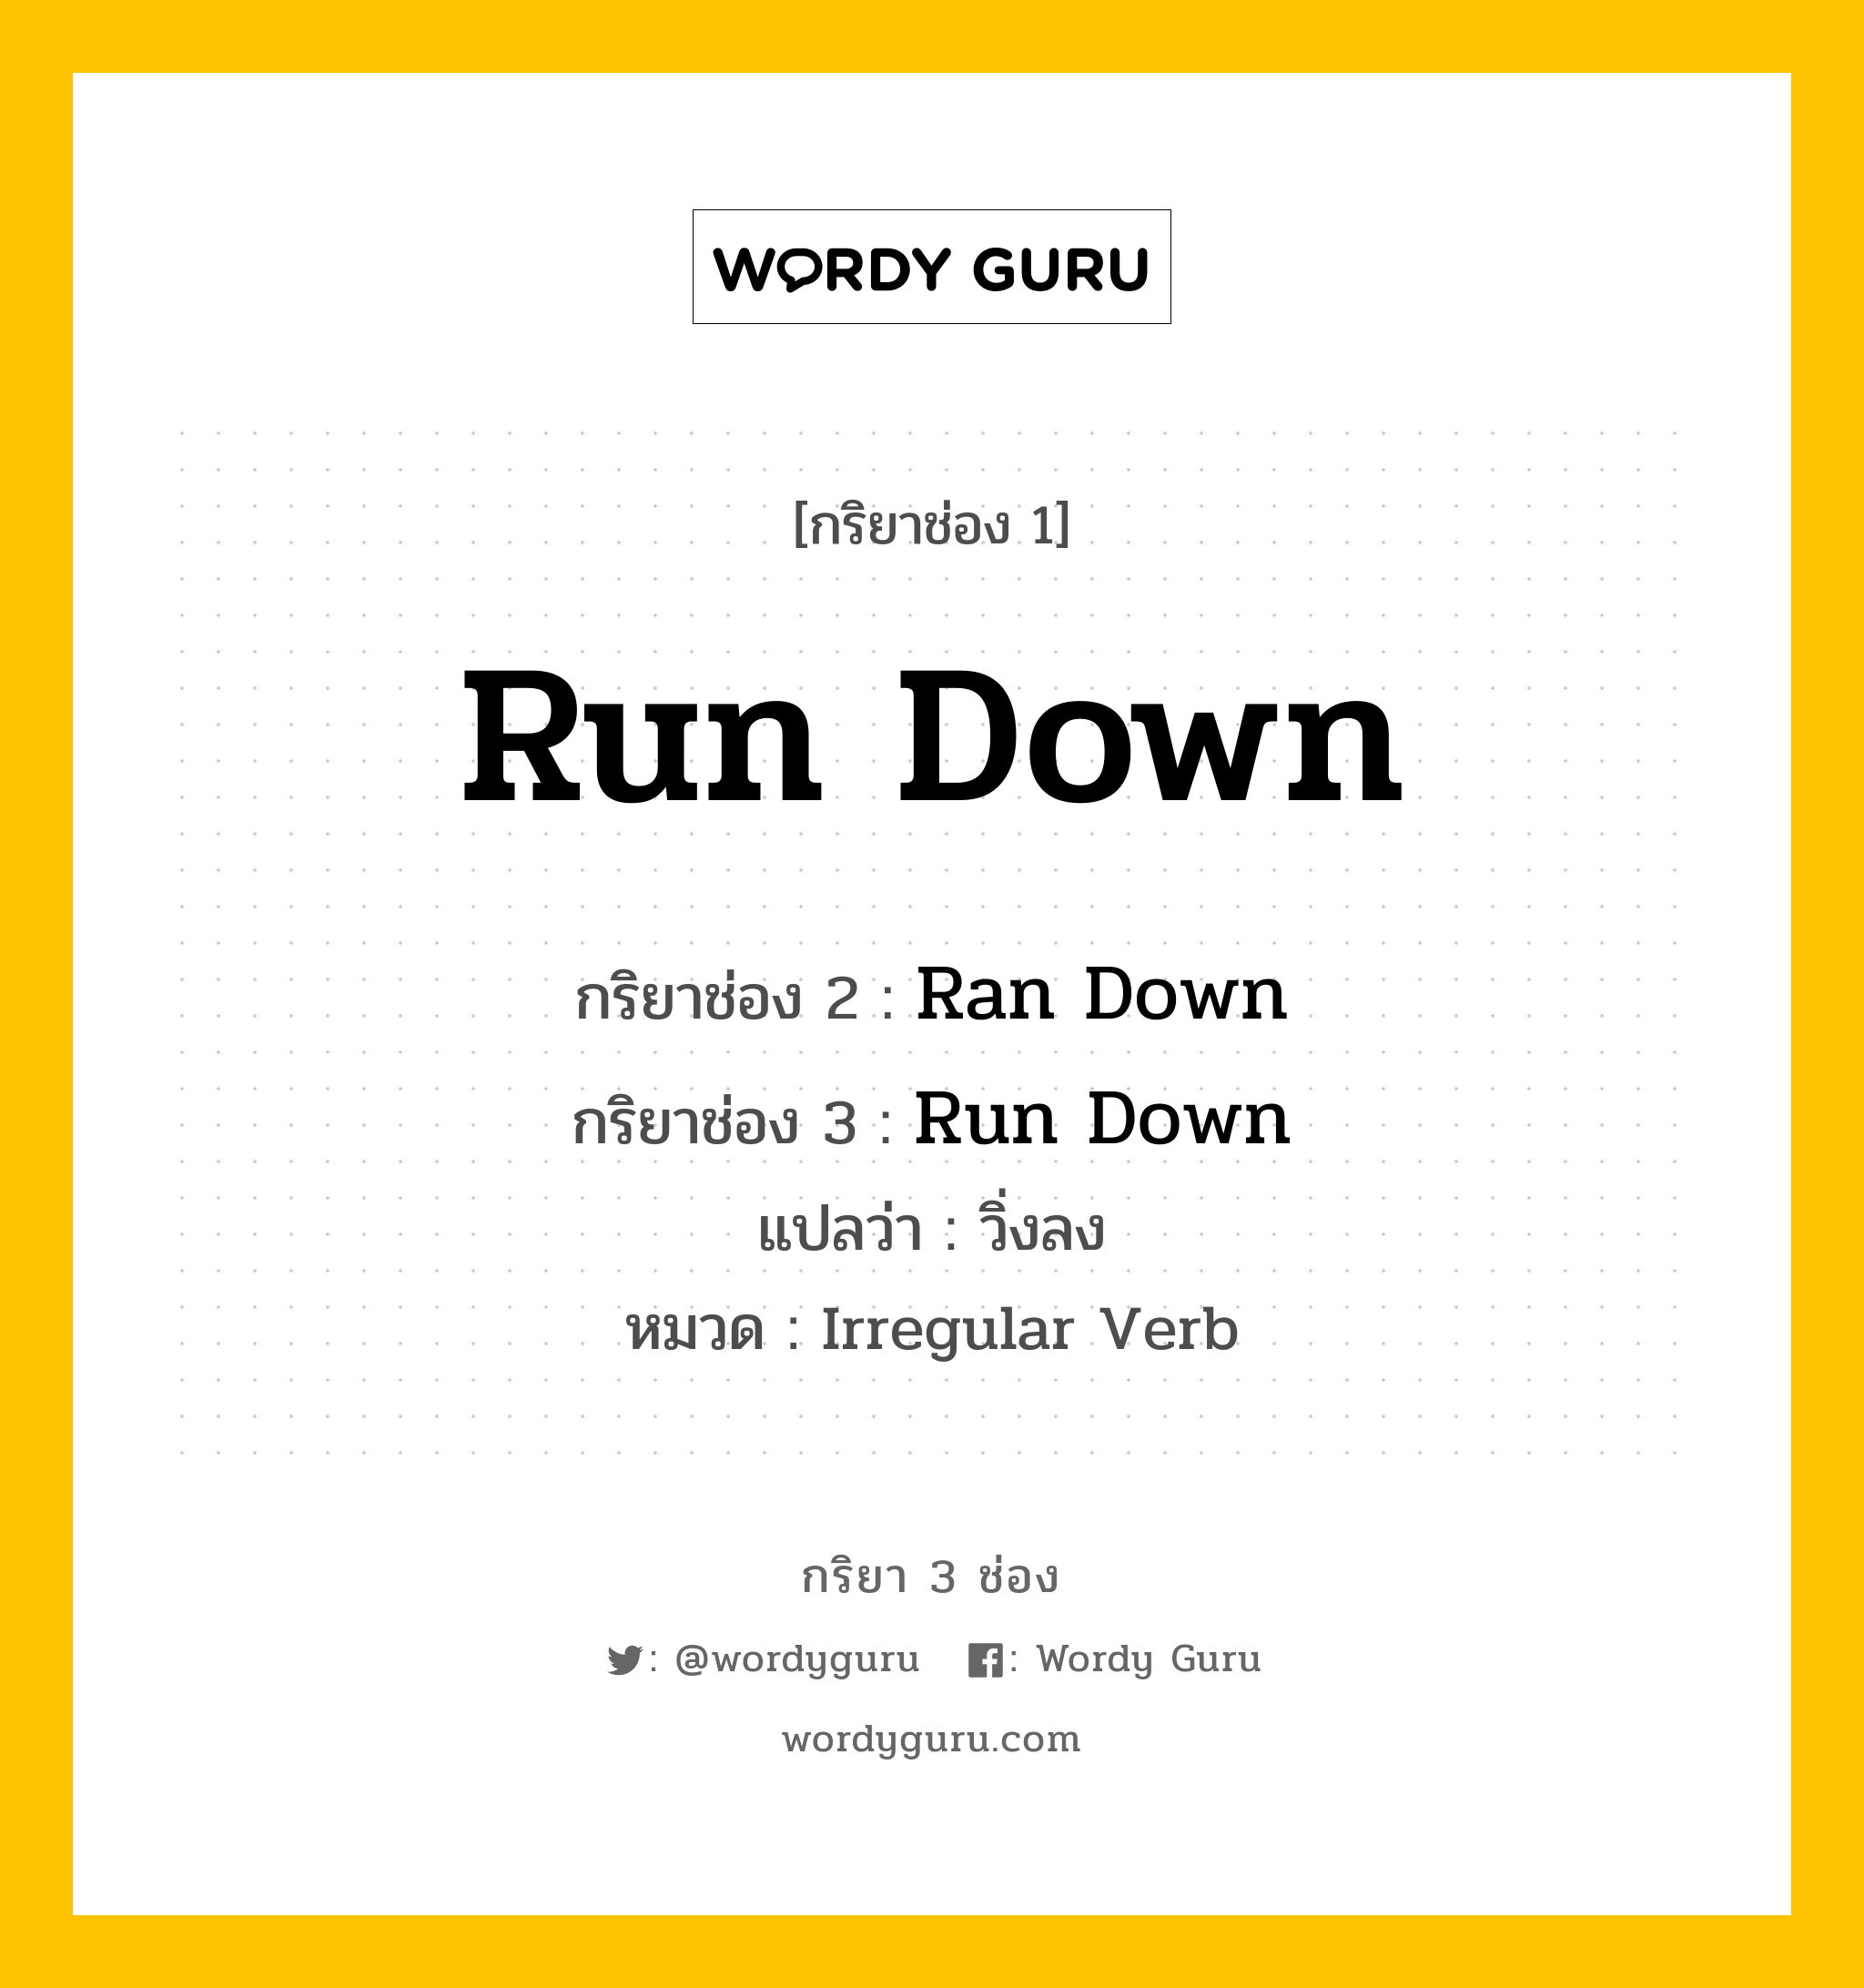 กริยา 3 ช่อง: Run Down ช่อง 2 Run Down ช่อง 3 คืออะไร, กริยาช่อง 1 Run Down กริยาช่อง 2 Ran Down กริยาช่อง 3 Run Down แปลว่า วิ่งลง หมวด Irregular Verb หมวด Irregular Verb